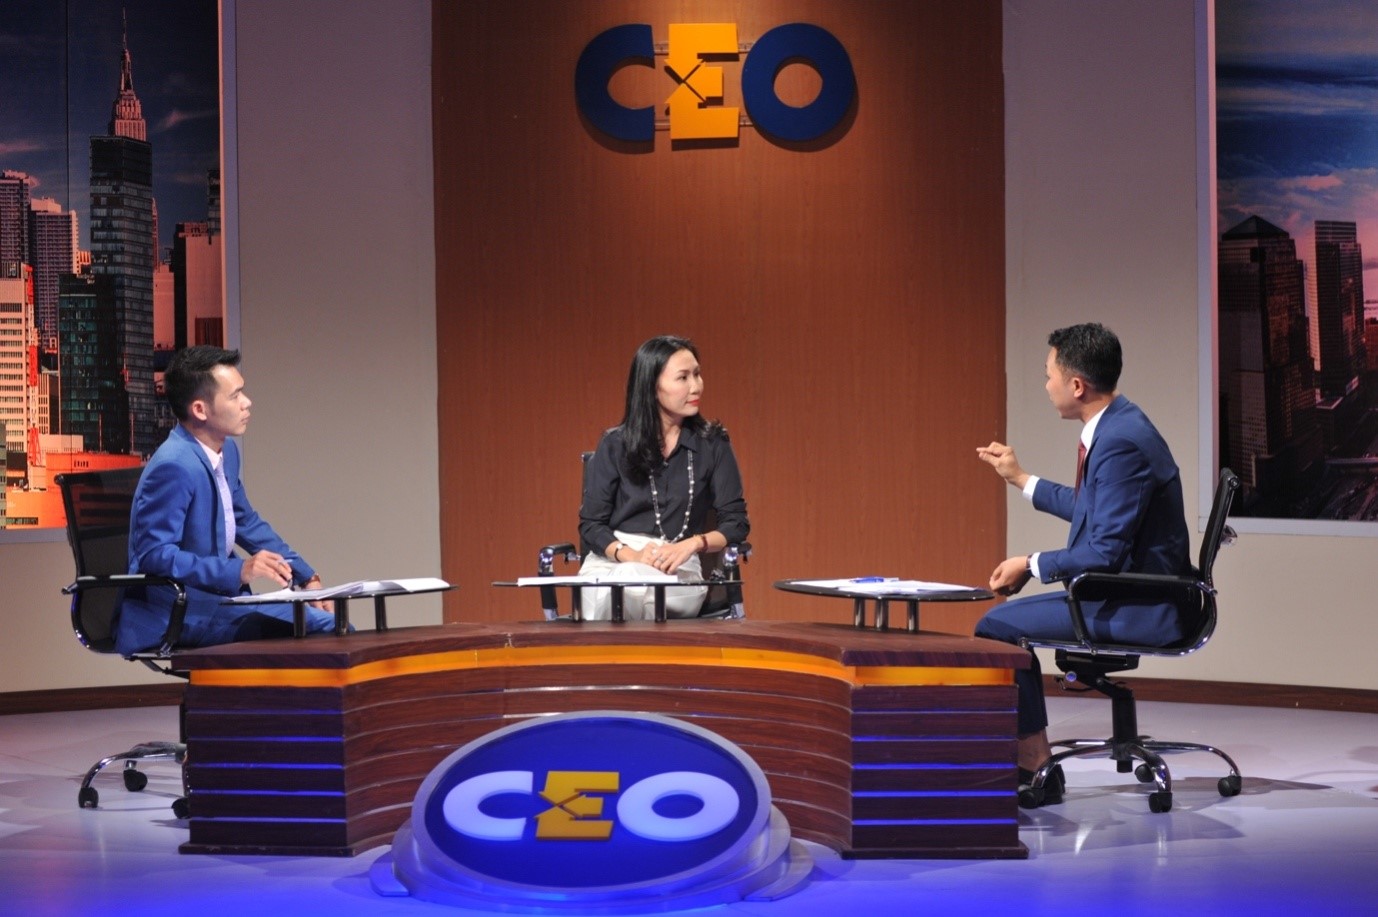 Chị Hương tranh biện cùng hai cổ đông trong chương trình CEO – Chìa khoá thành công VTV1(chương trình do Đài Truyền hình Việt Nam và Hoang gia Media Group thực hiện với sự đồng hành của Tập đoàn Novaland)